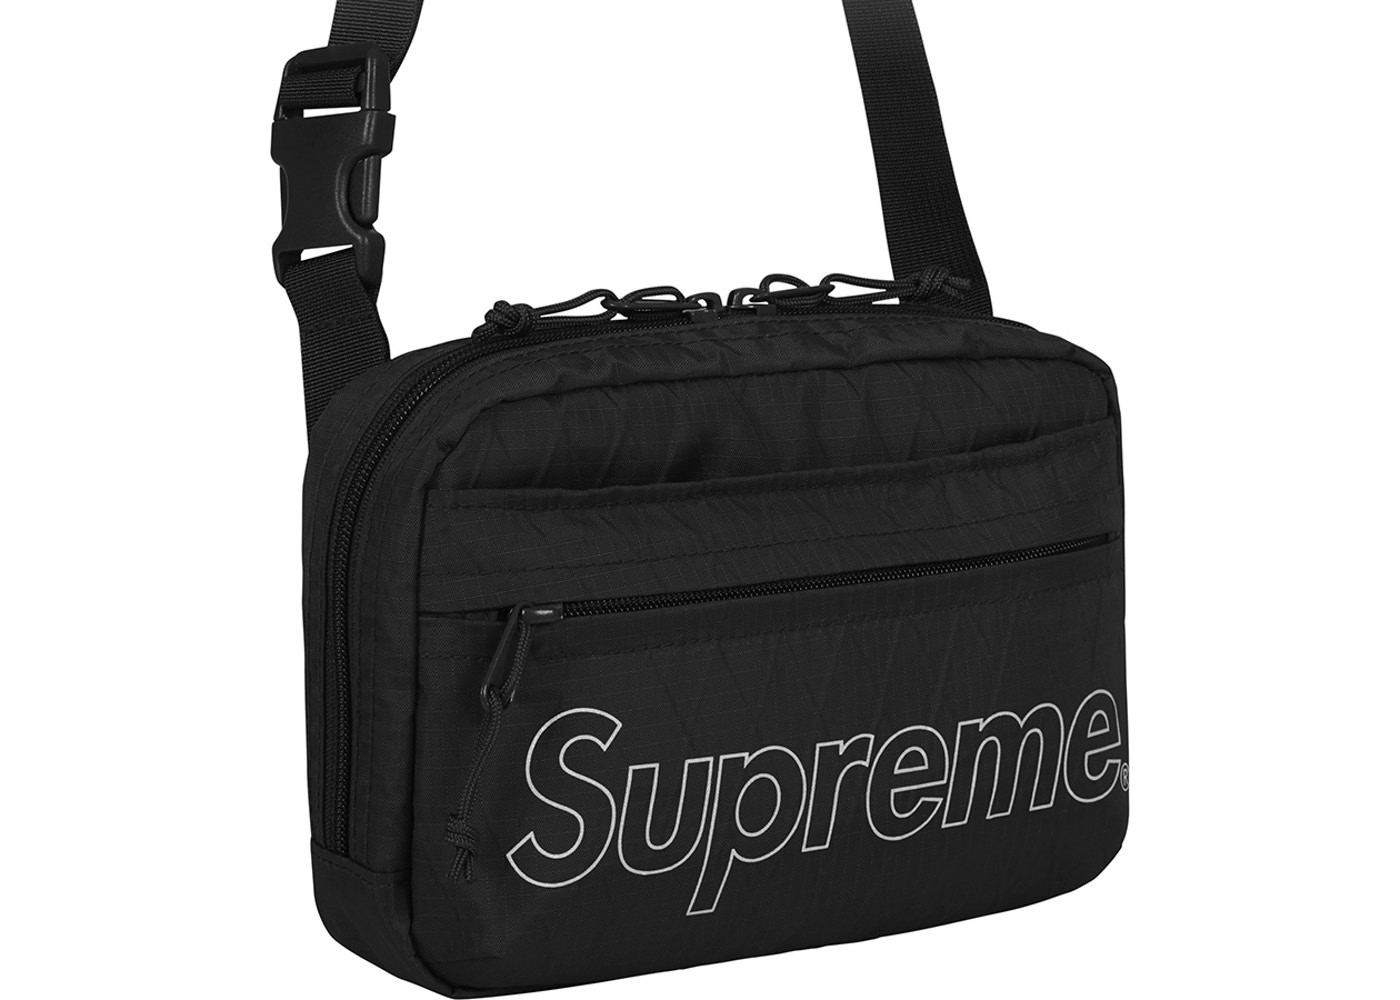 Supreme Shoulder Bag Black